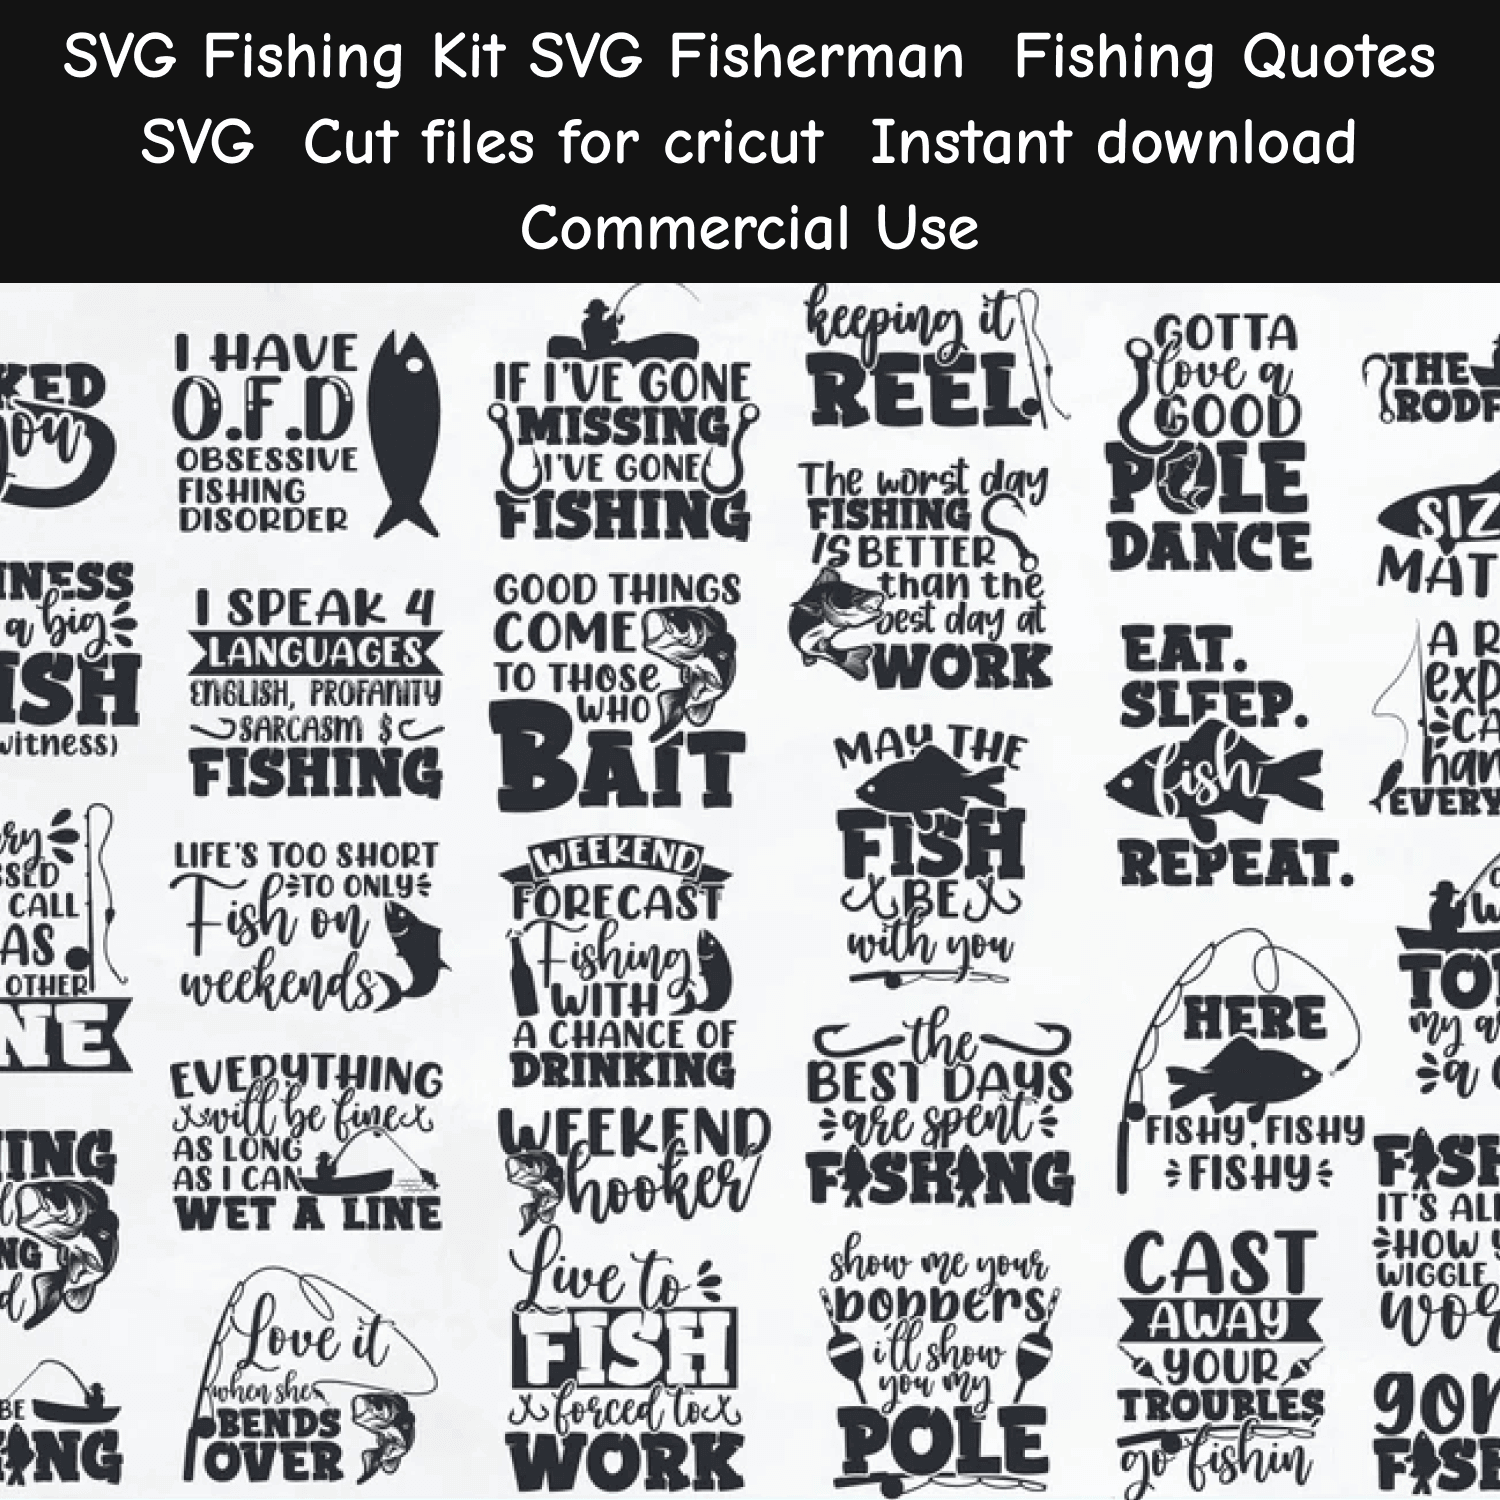 SVG Fishing Kit.